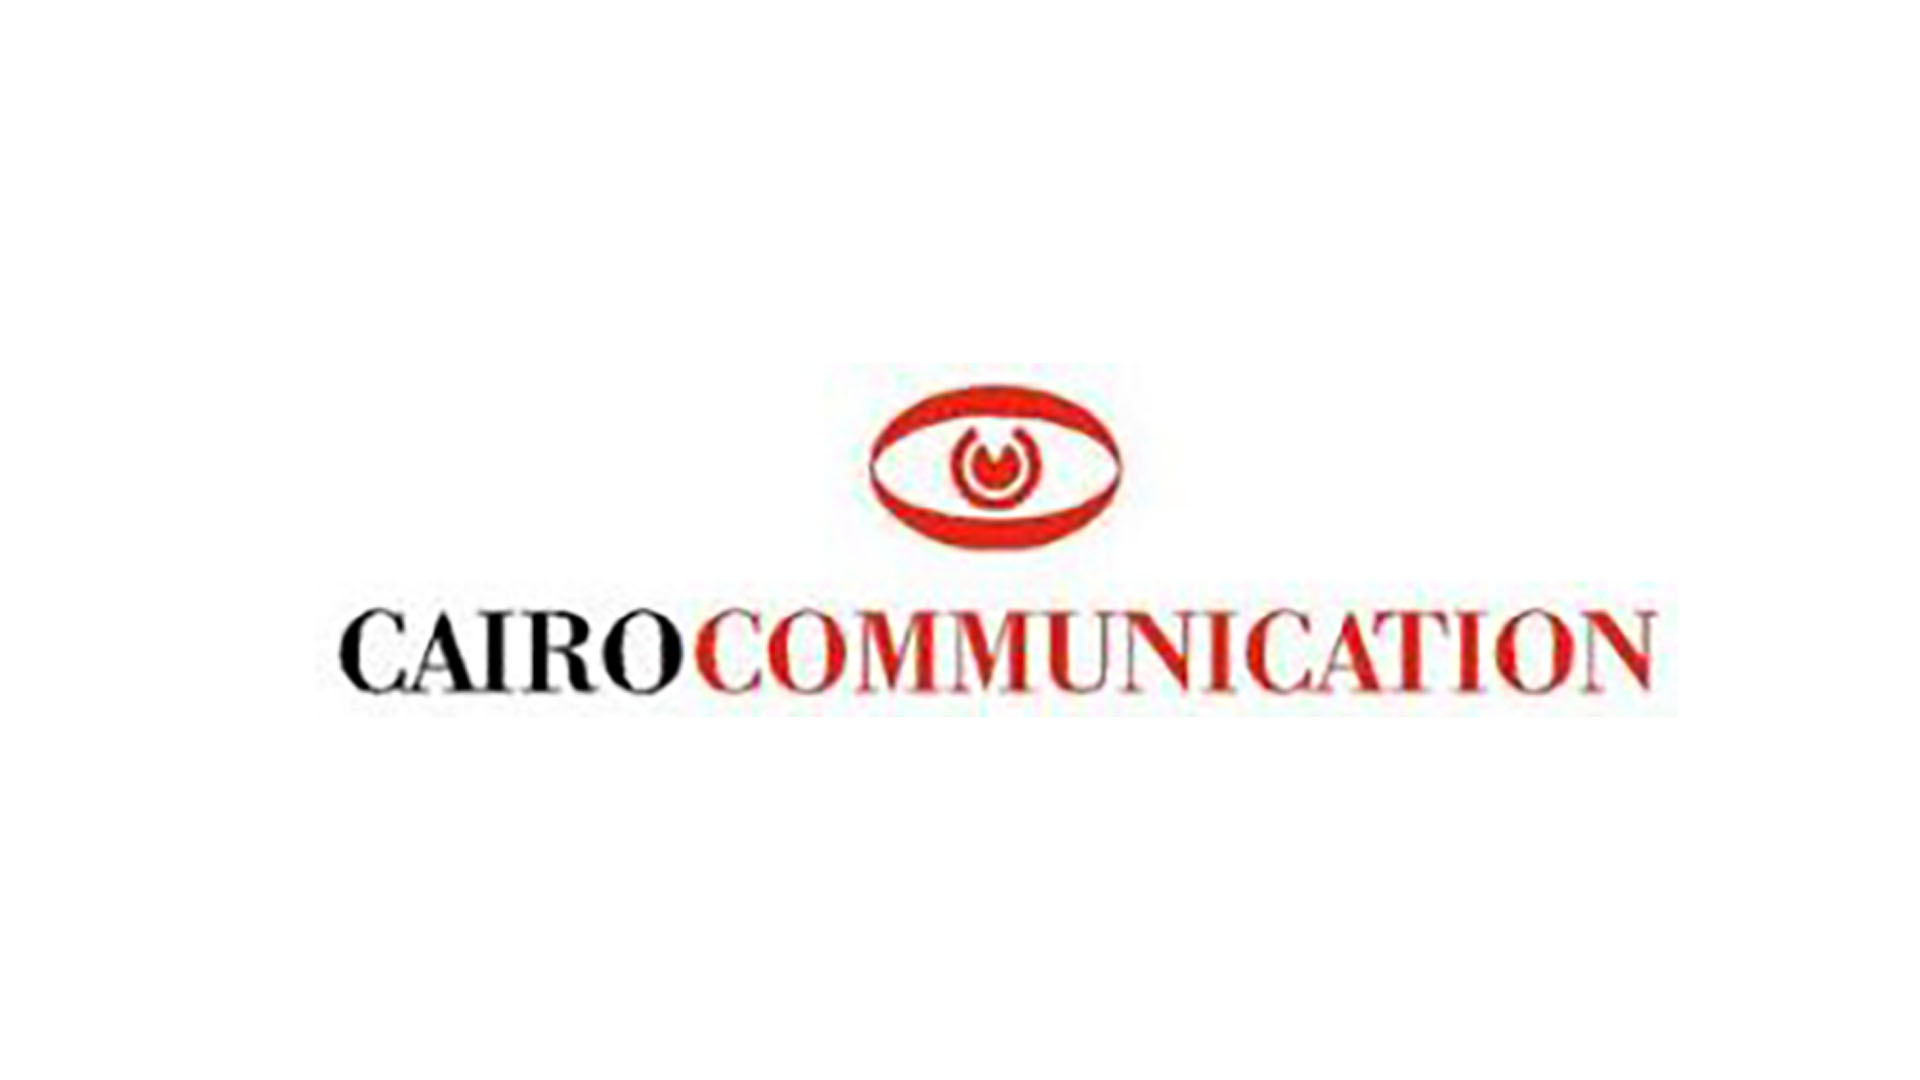 Cairo Communication S.p.A. è una società per azioni italiana costituita nel 1995, capofila di un gruppo di aziende che operano nel settore editoriale.